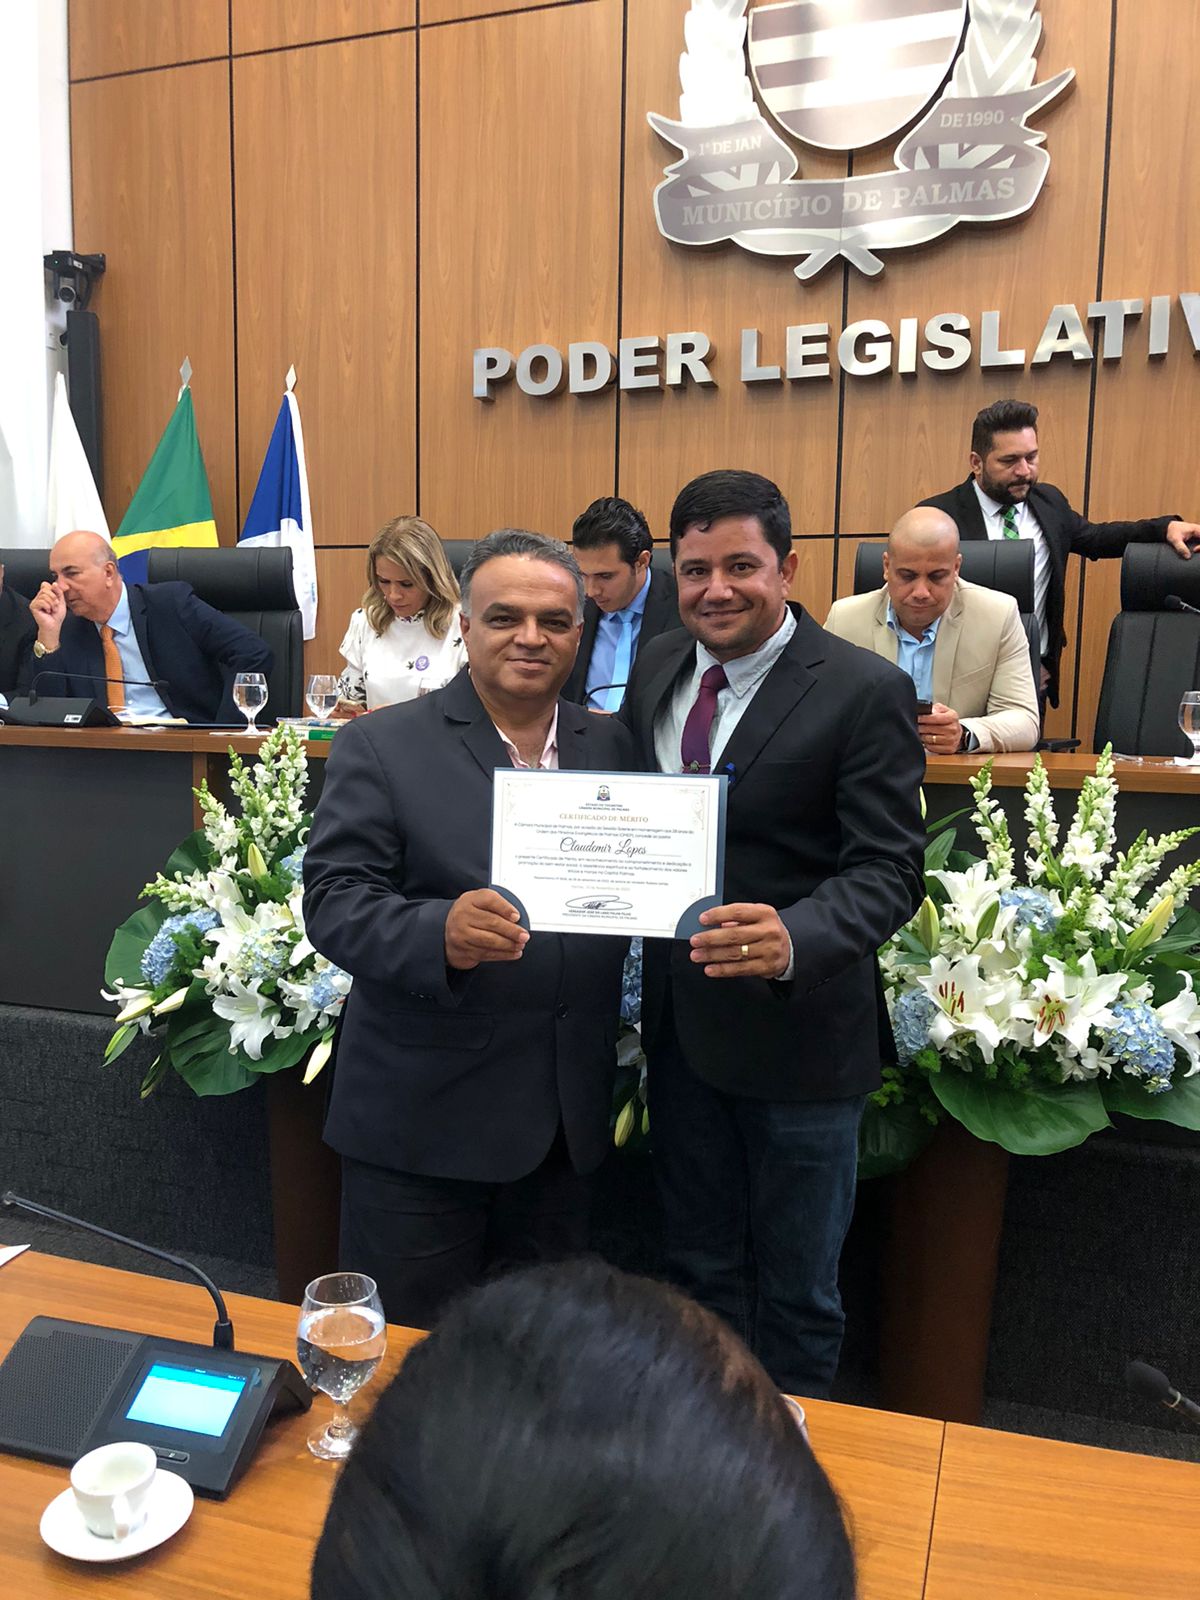 Pré-candidato a vereador de Palmas, Pastor Claudemir Lopes recebe homenagem na Câmara Municipal